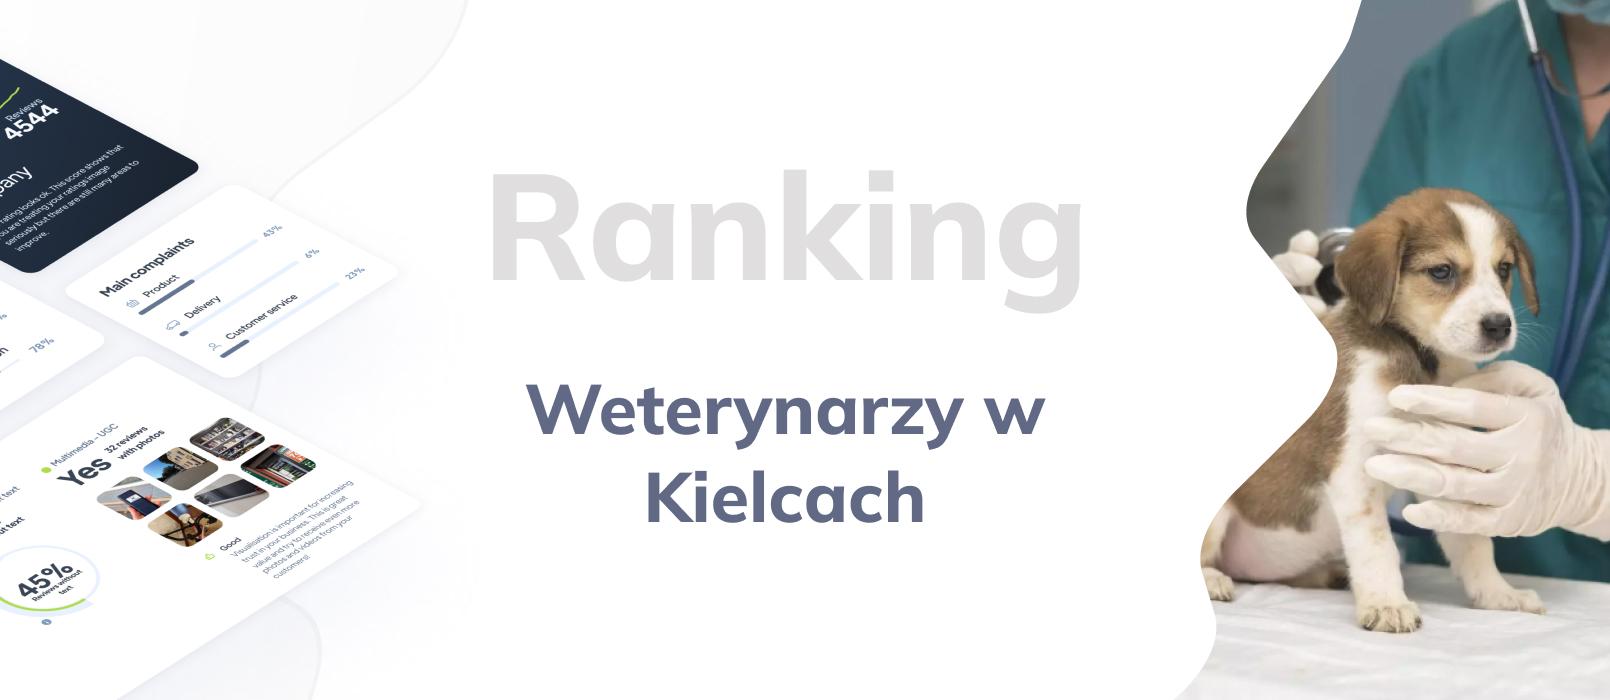 Weterynarze w Kielcach - ranking TOP 10